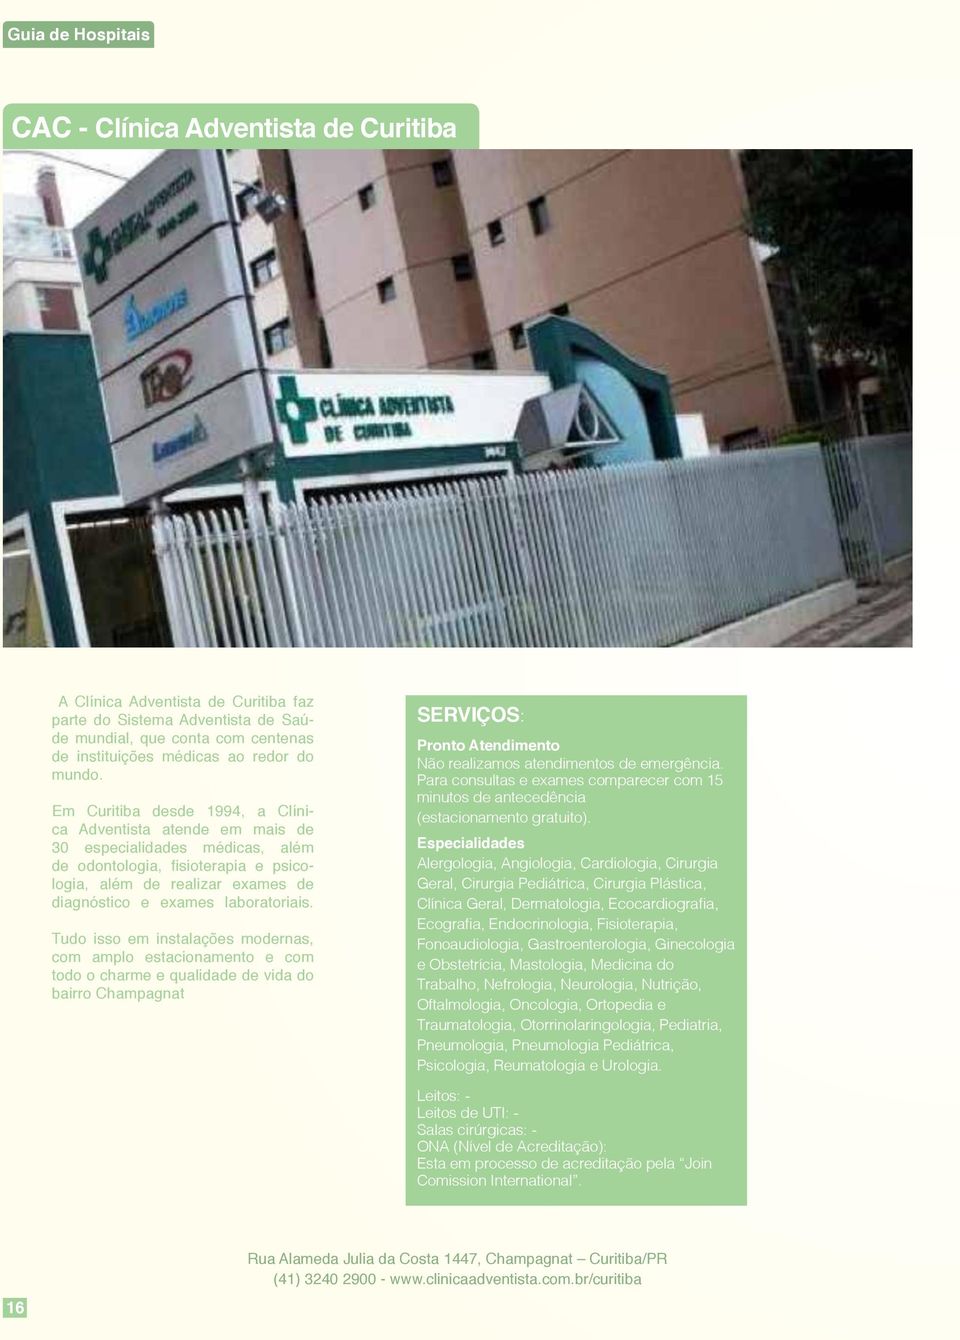 Em Curitiba desde 1994, a Clínica Adventista atende em mais de 30 especialidades médicas, além de odontologia, fisioterapia e psicologia, além de realizar exames de diagnóstico e exames laboratoriais.